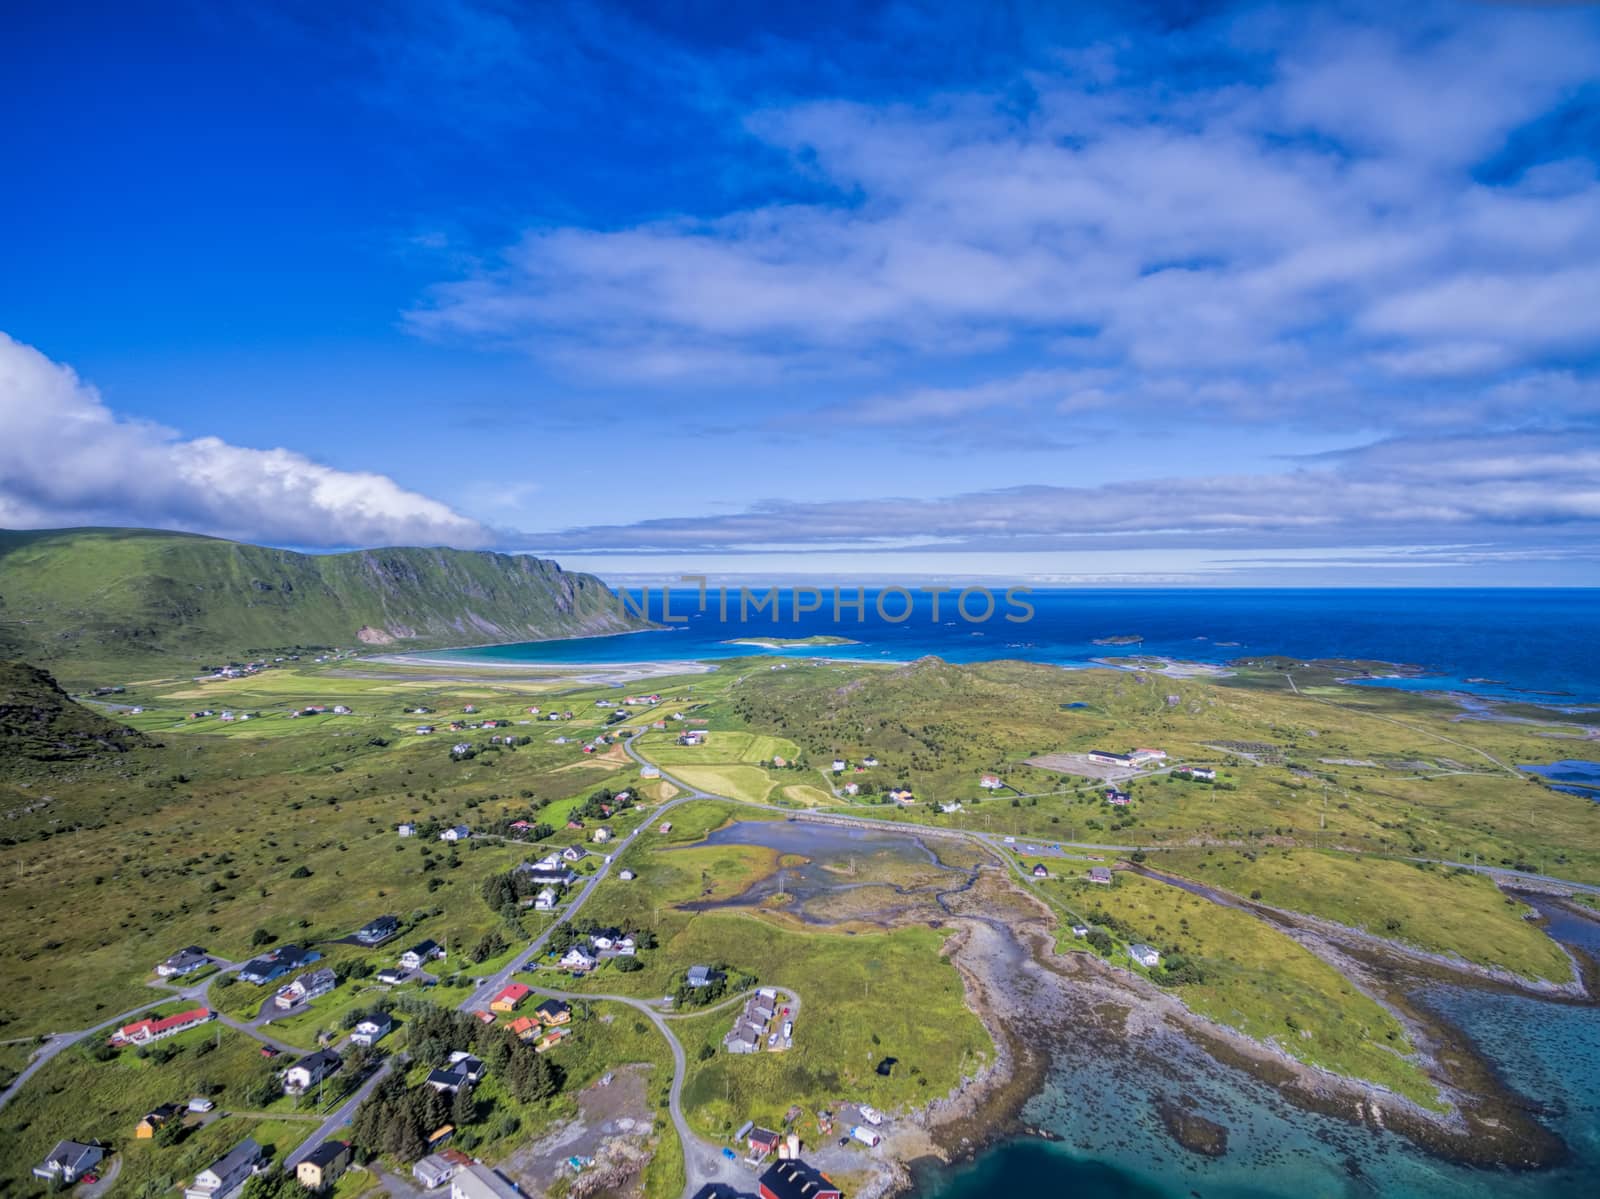 Lofoten islands in Norway, popular tourist destination, aerial view